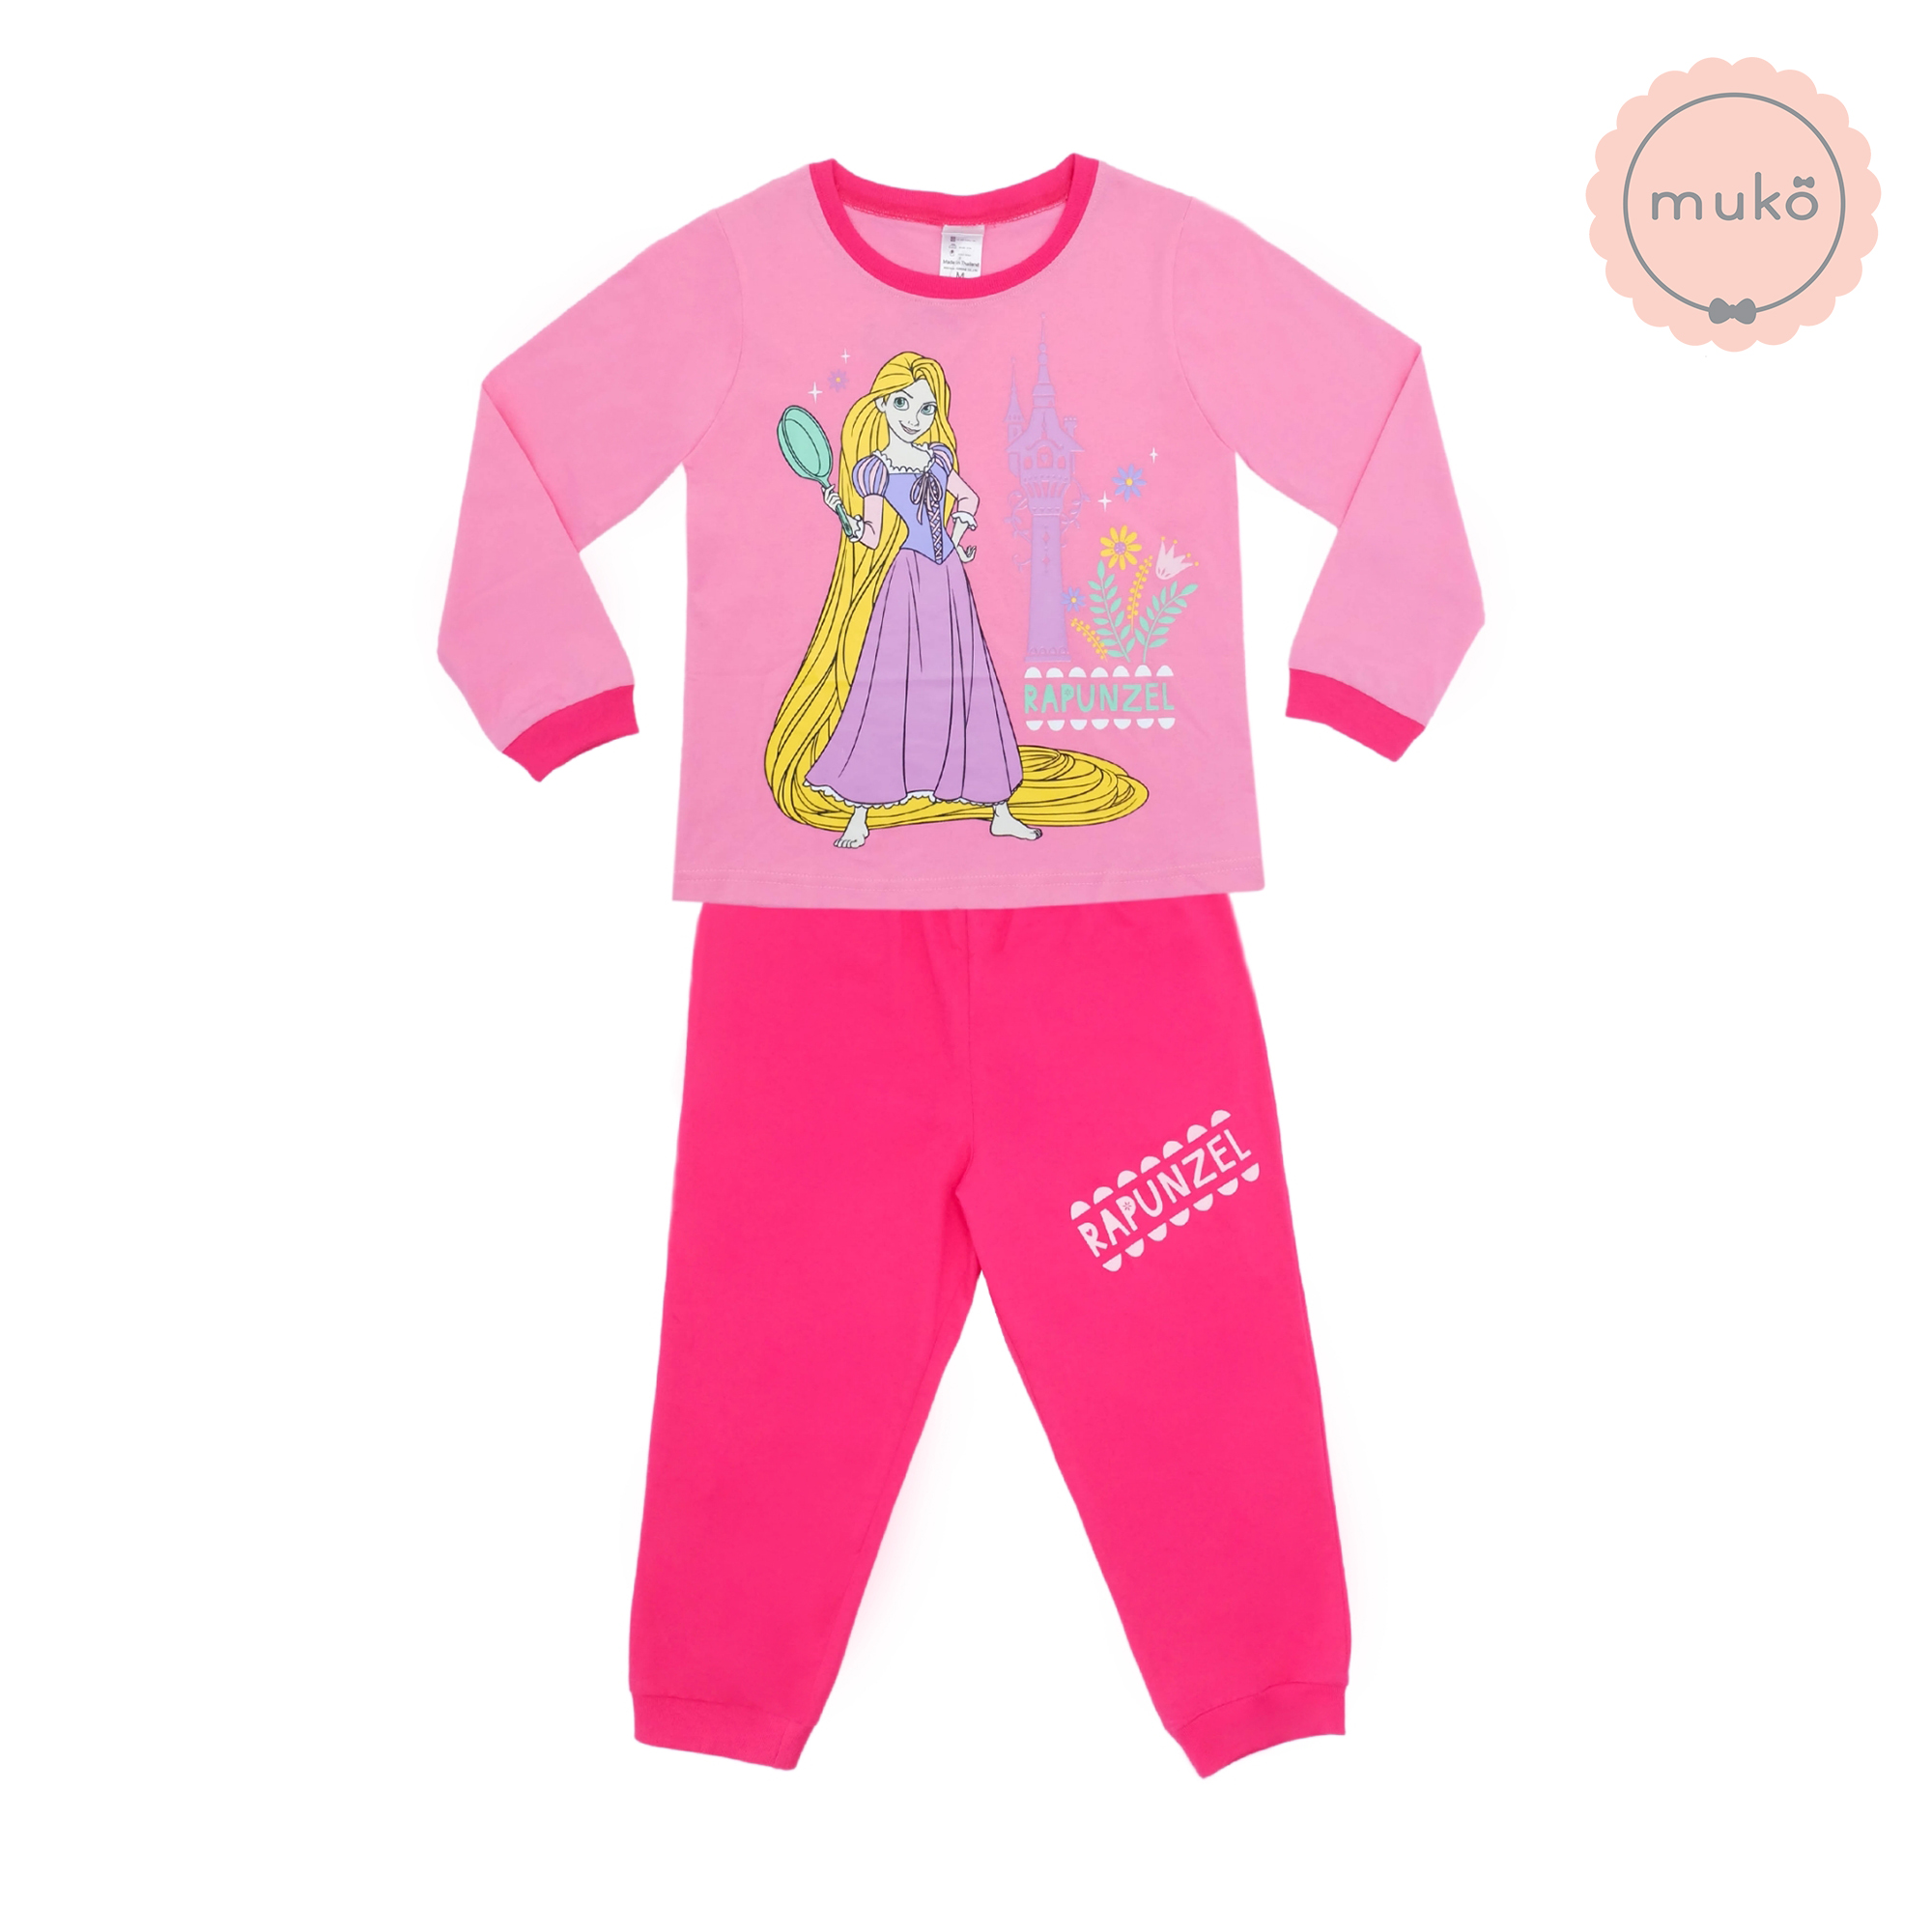 ชุดเด็ก 4-5 ขวบ แขนยาว-ขายาว (Size S) DPC127-10-XL-Pink S ลาย เจ้าหญิงราพันเซล Rapunzel สีชมพู